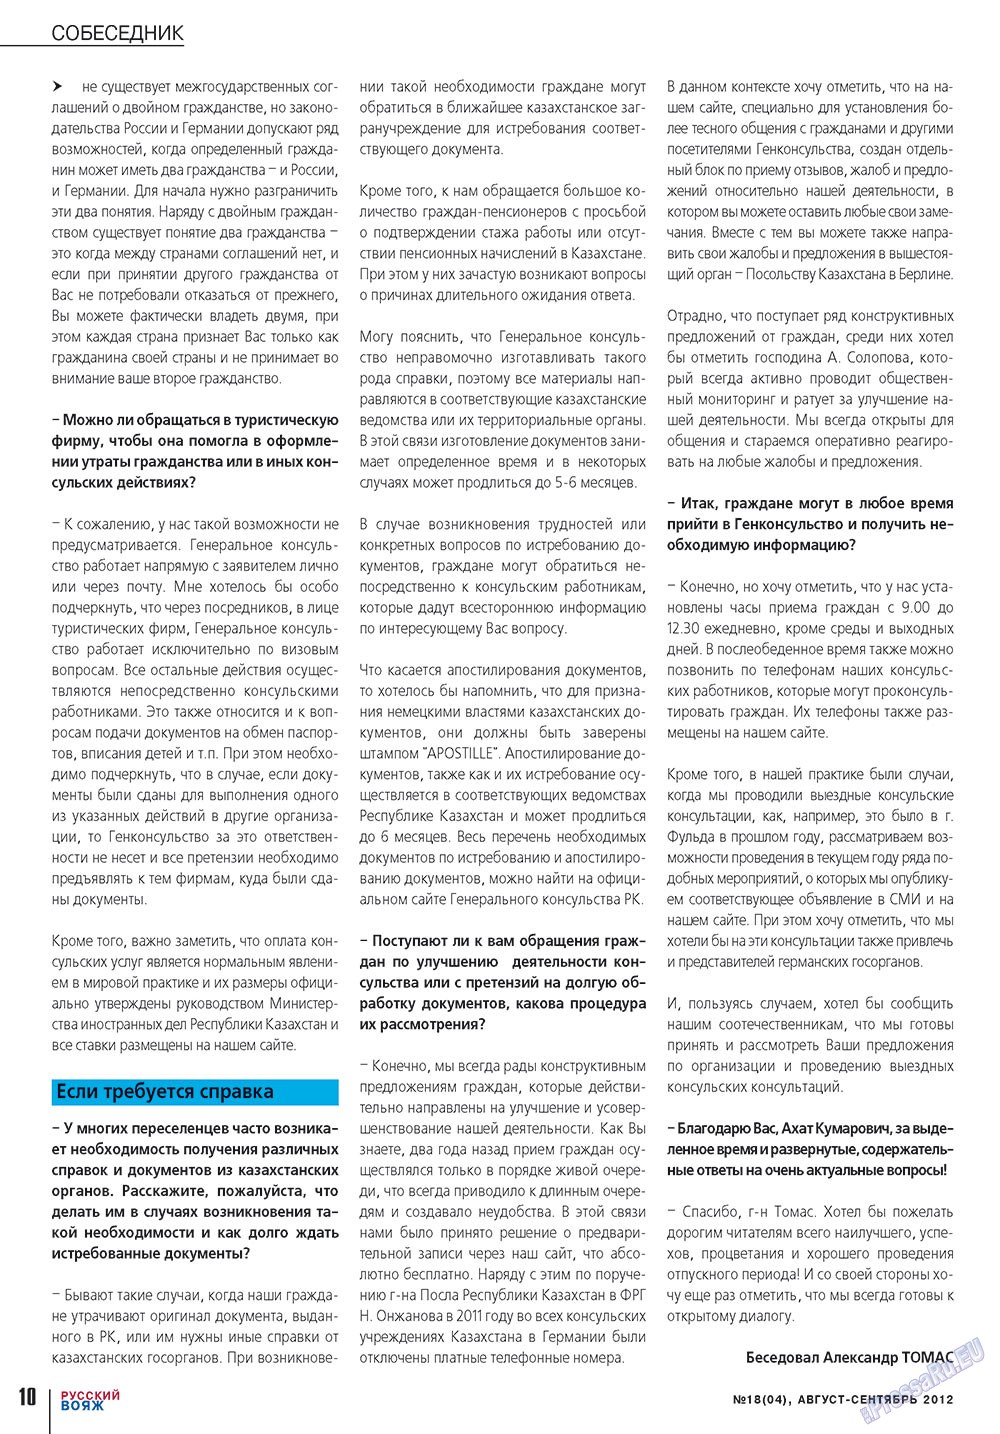 Русский вояж (журнал). 2012 год, номер 18, стр. 10